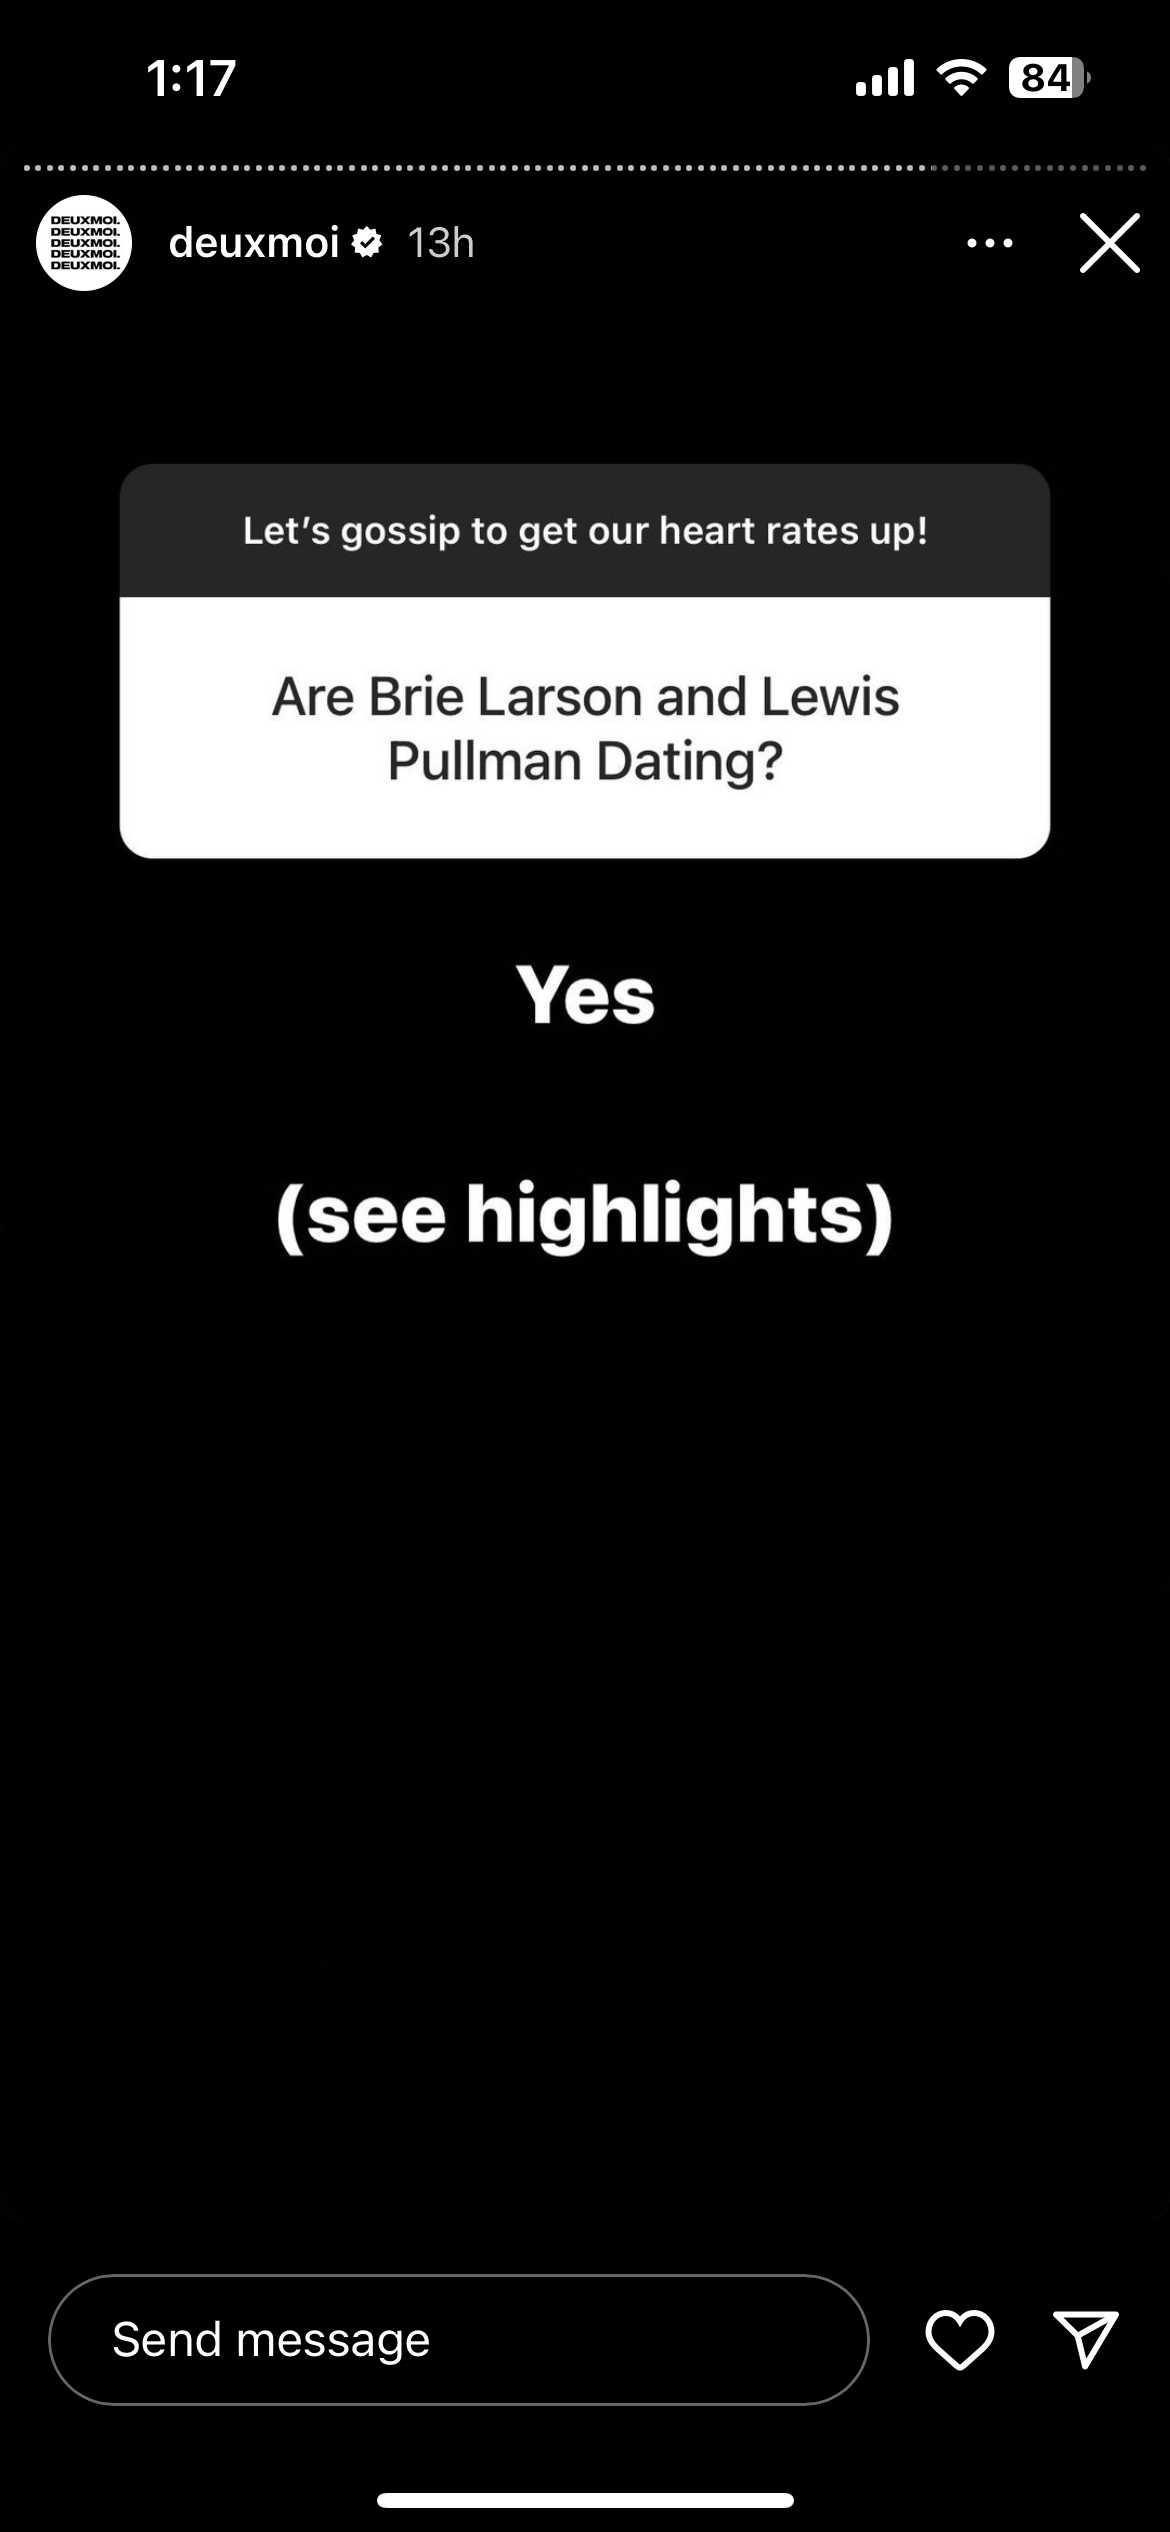 DeuxoMoi believes that Brie Larson is dating her boyfriend, Lewis Pullman.